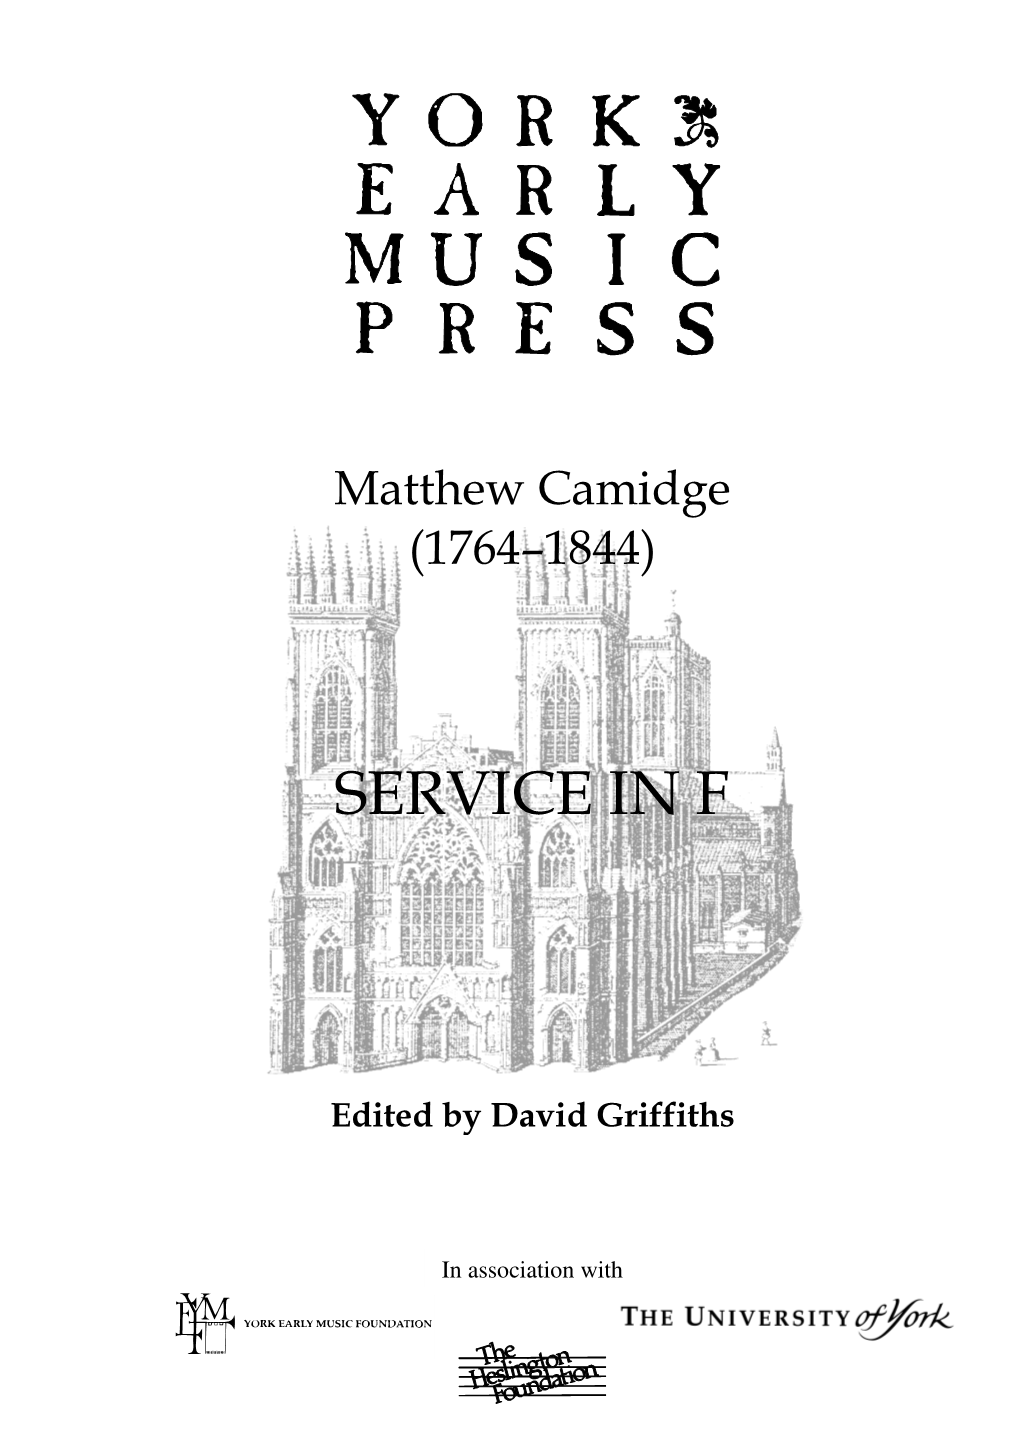 Camidge, Matthew,’ by David Griffiths